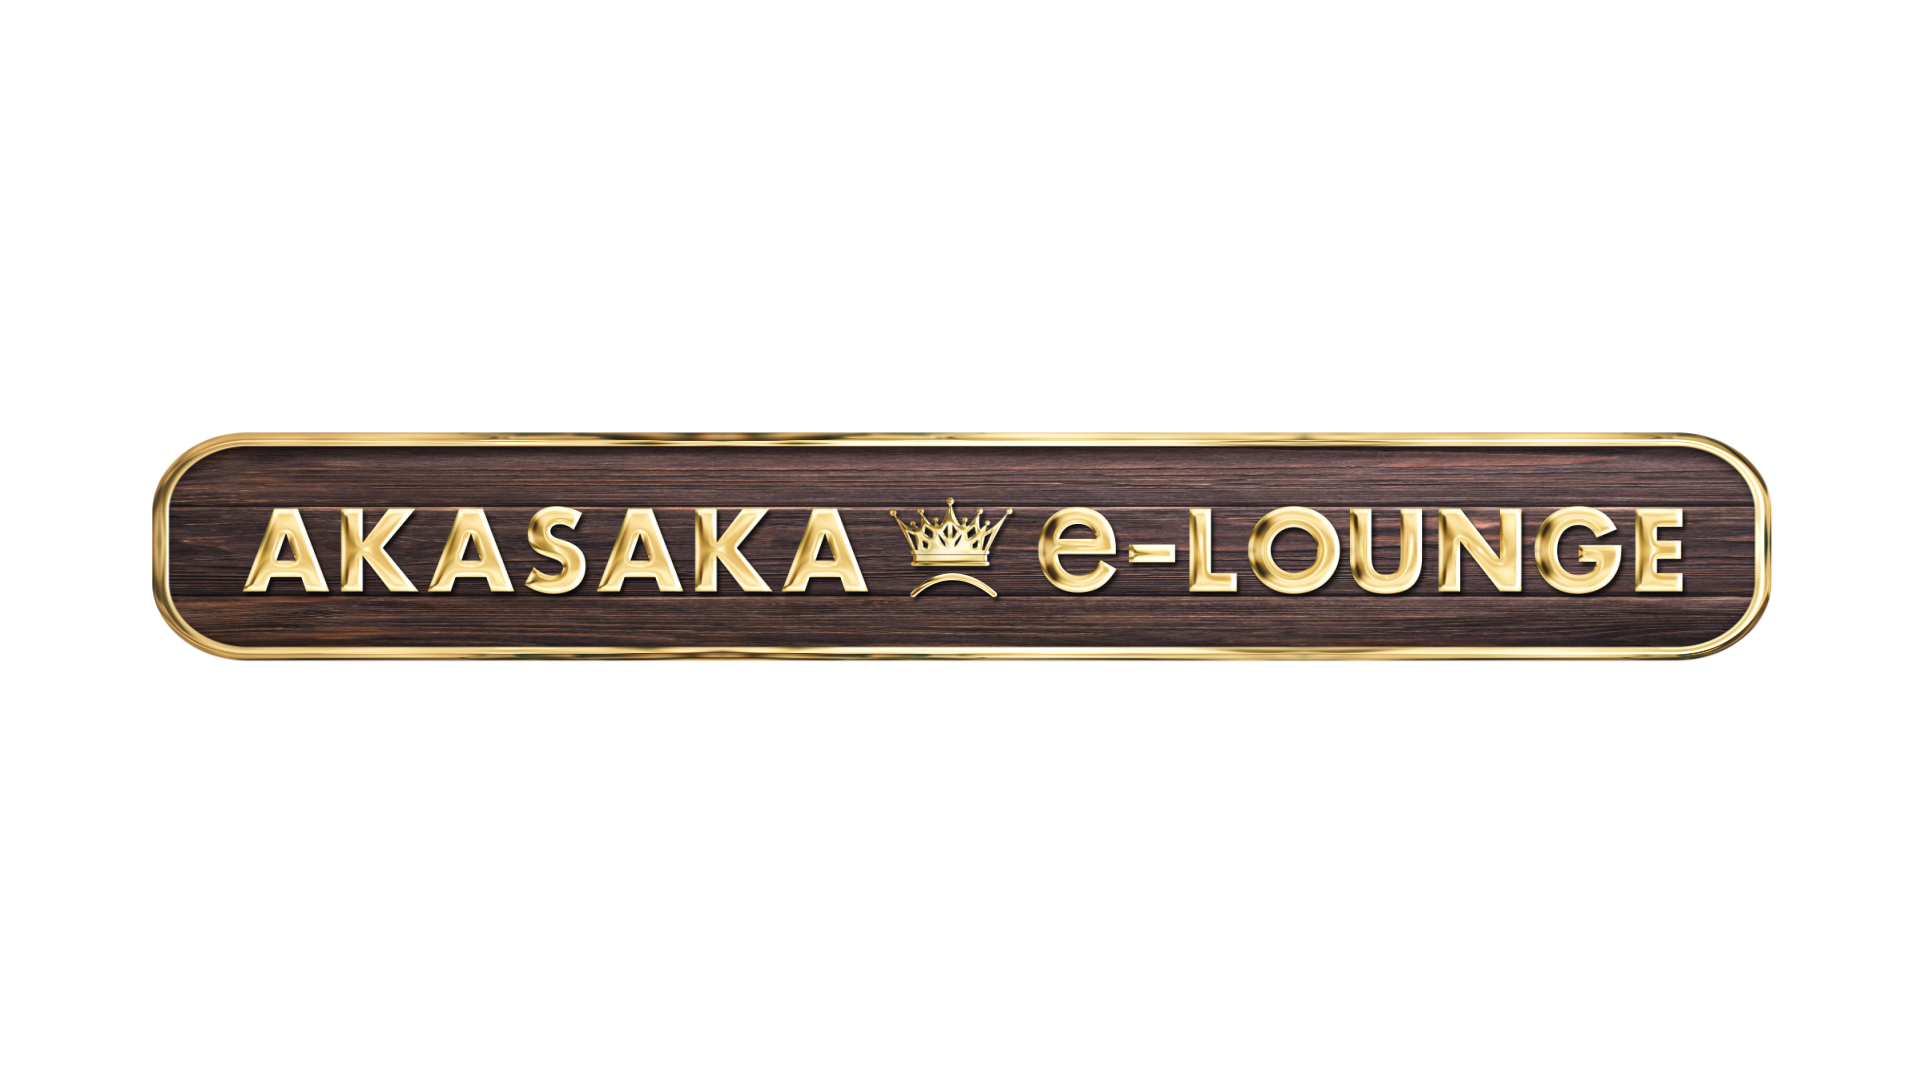 生活の中で抱く「悩み」や「疑問」を解決するためのヒントを与えてくれる『AKASAKA e-LOUNGE』